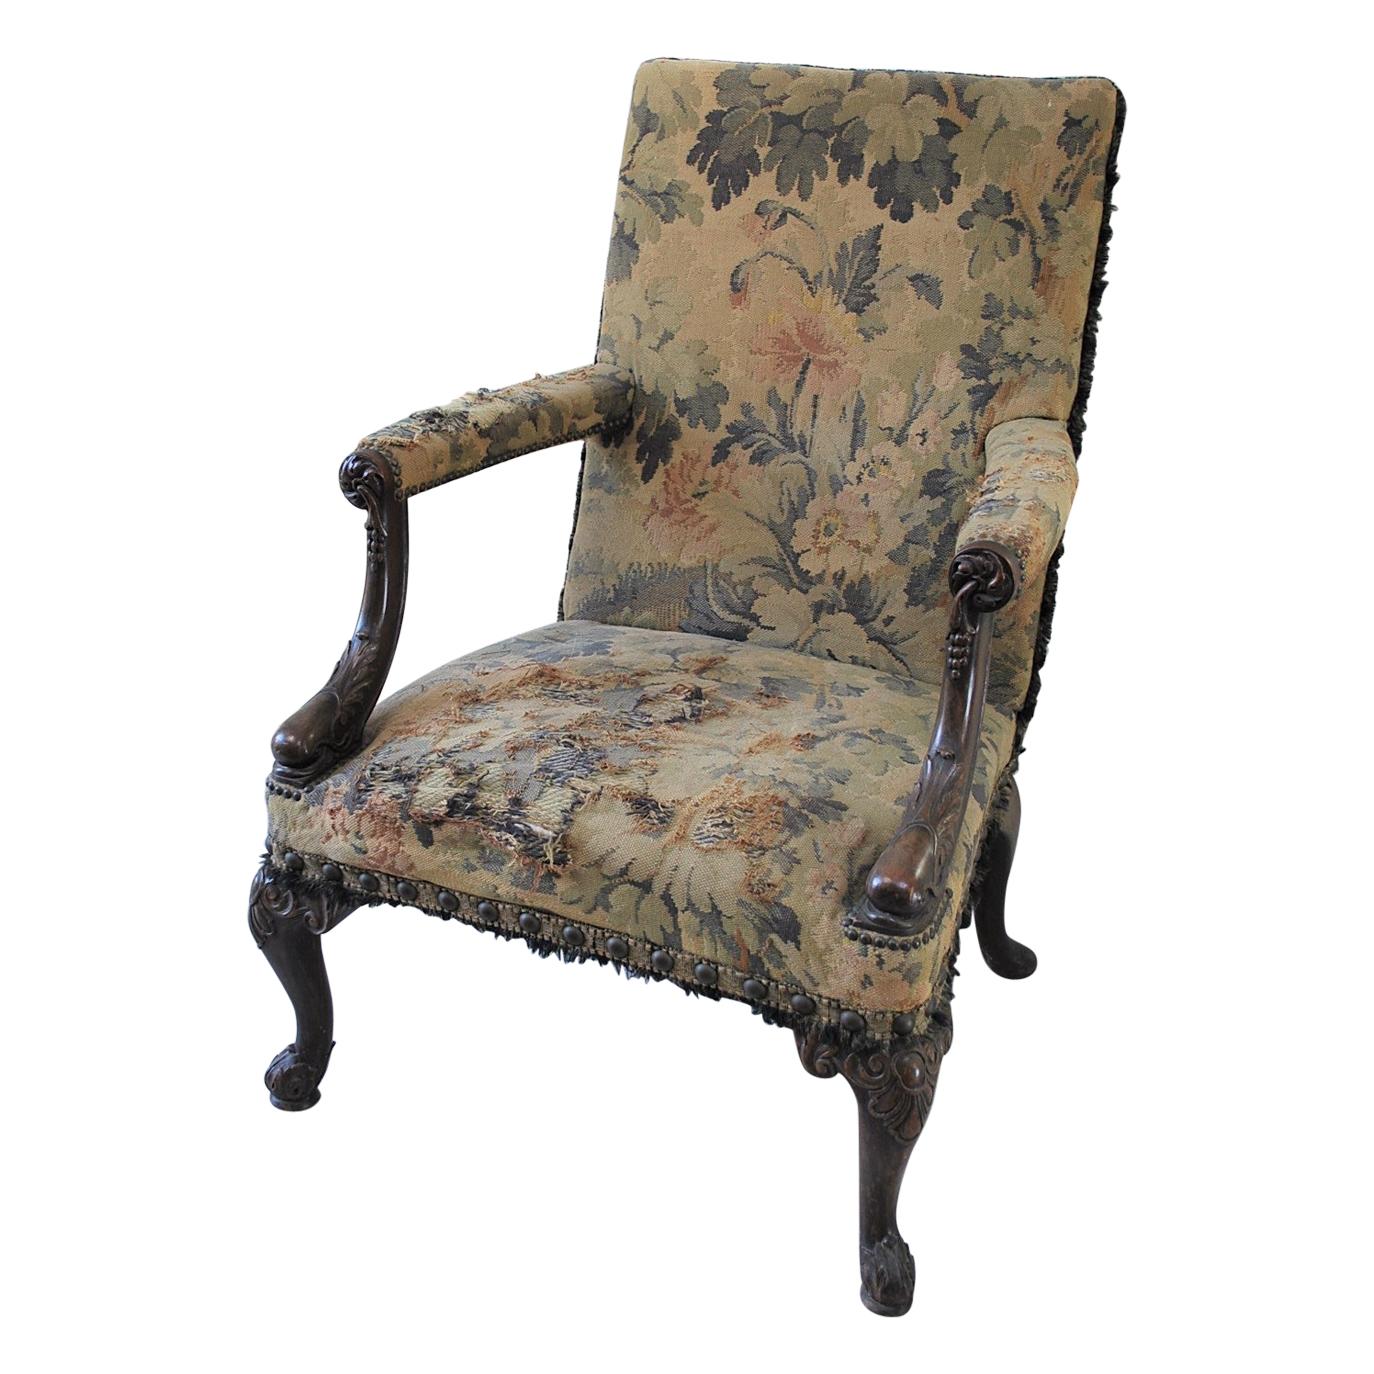 Rare American Gainsborough Chair For Sale